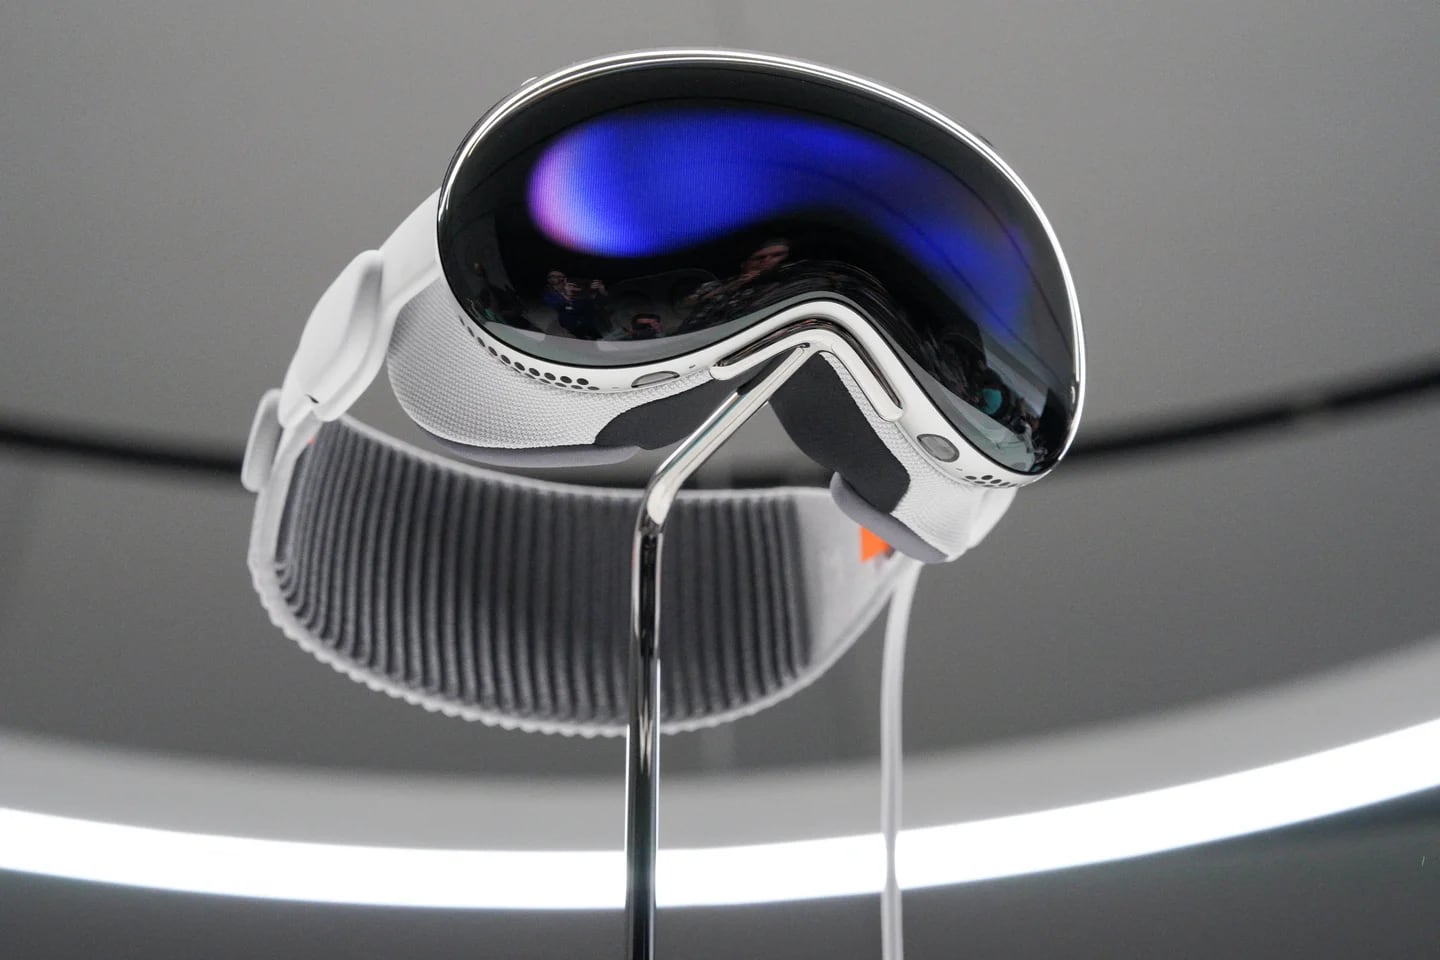 Unas gafas VR para reemplazar al PC: así es la propuesta de Meta, enfocada  en la productividad del usuario - Meta Quest 2 - 3DJuegos